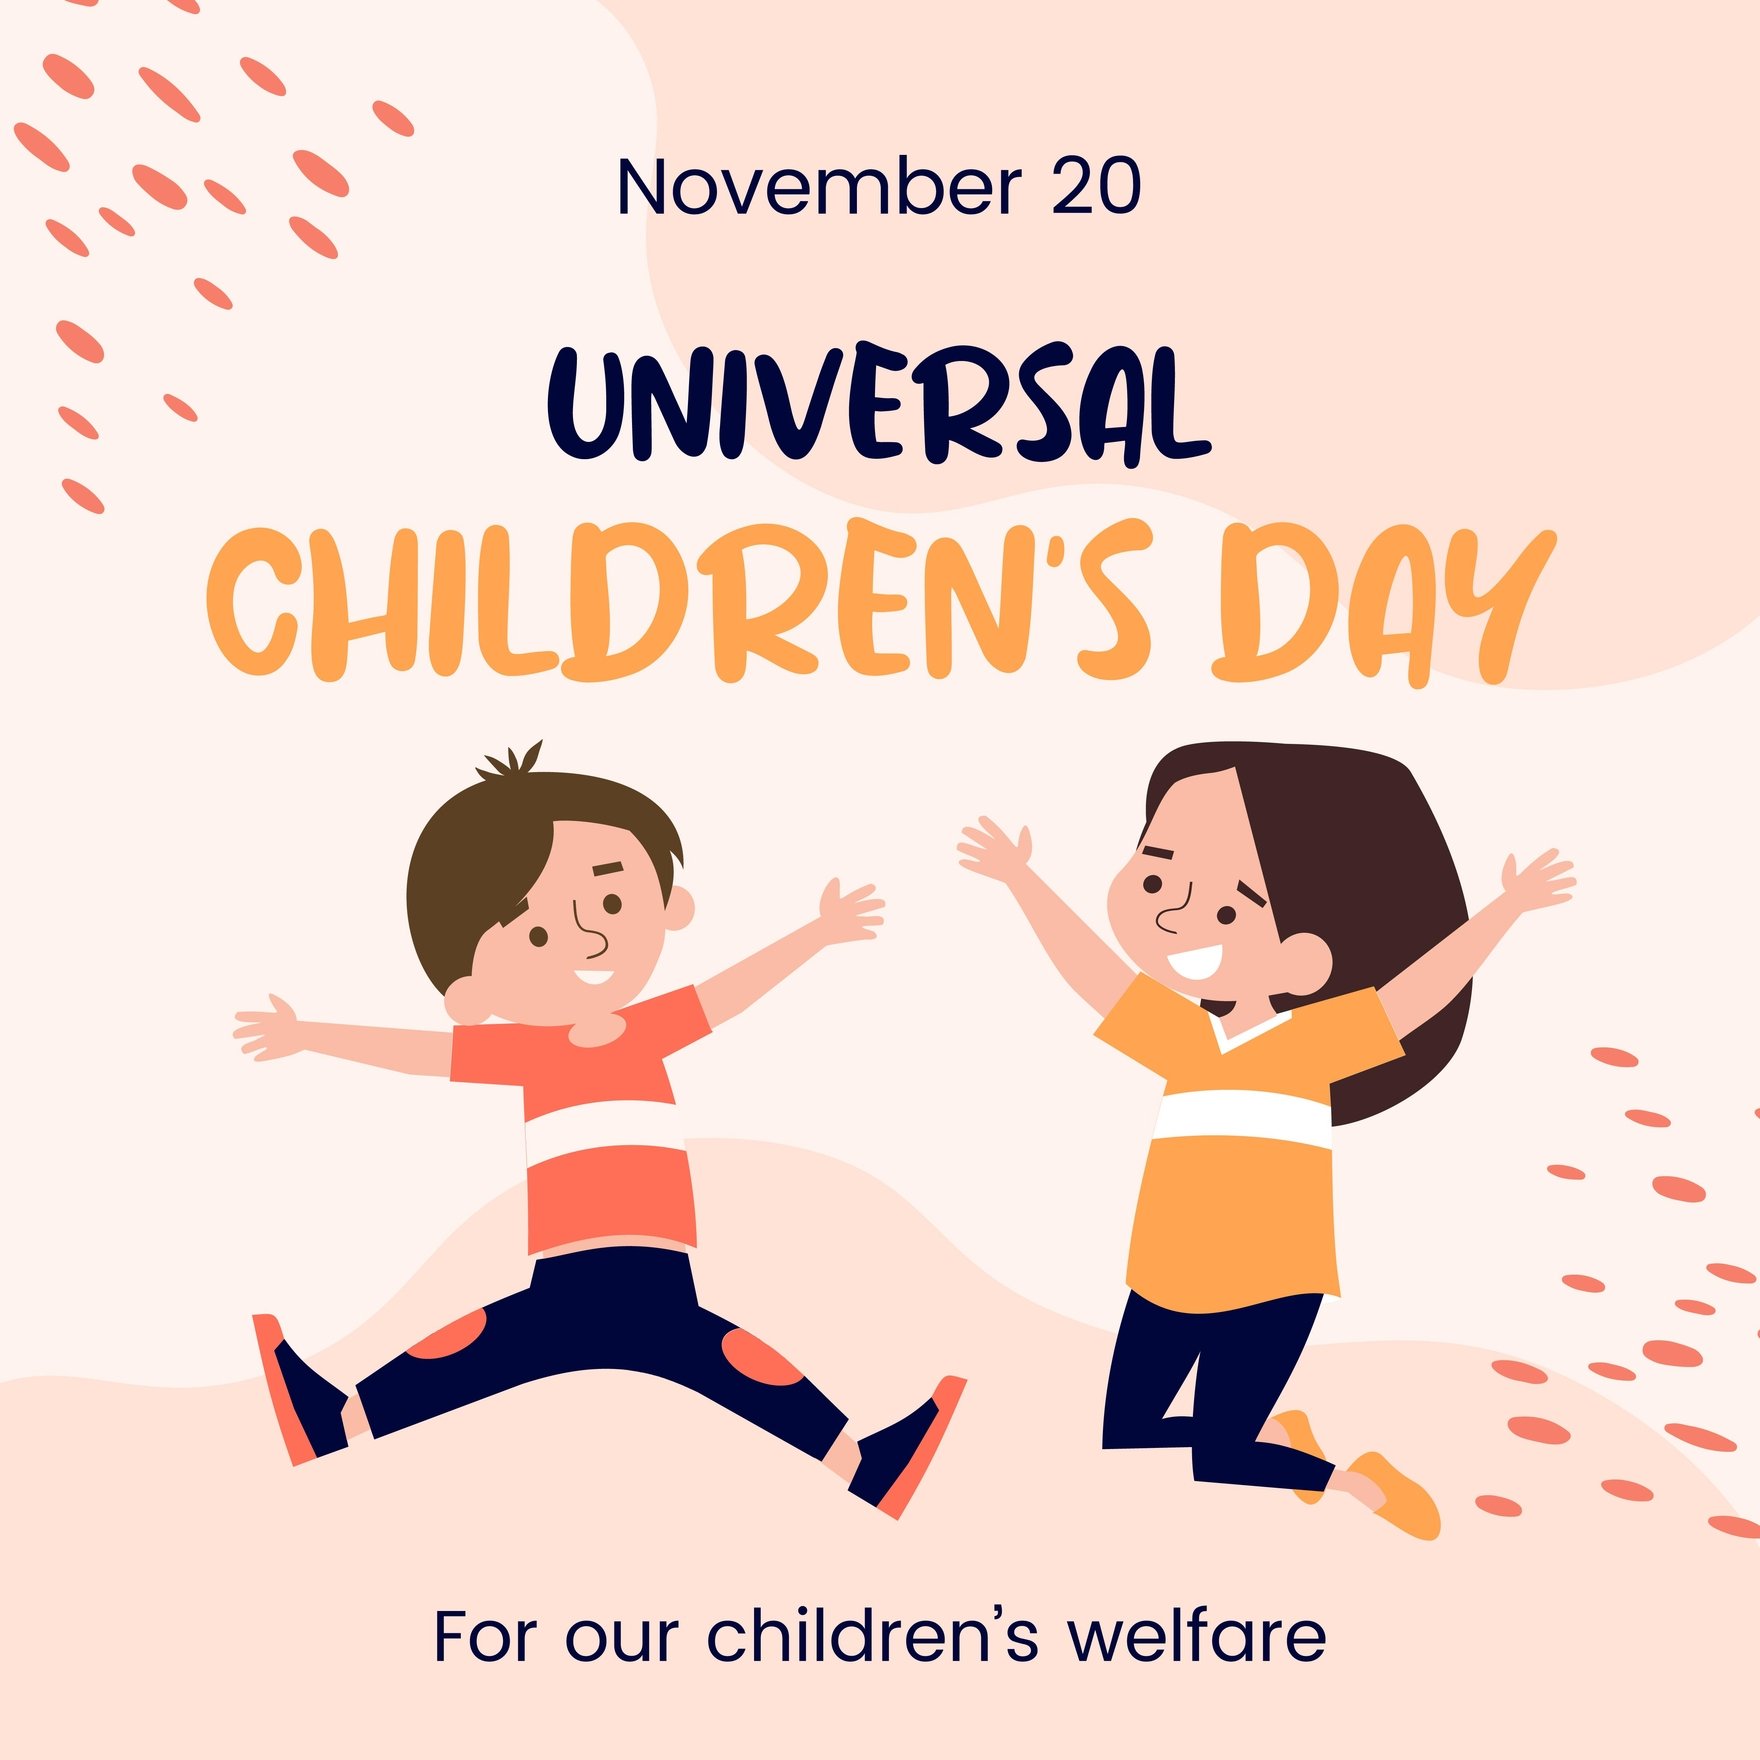 Universal Children’s Day FB Post in Illustrator, PSD, EPS, SVG, JPG, PNG